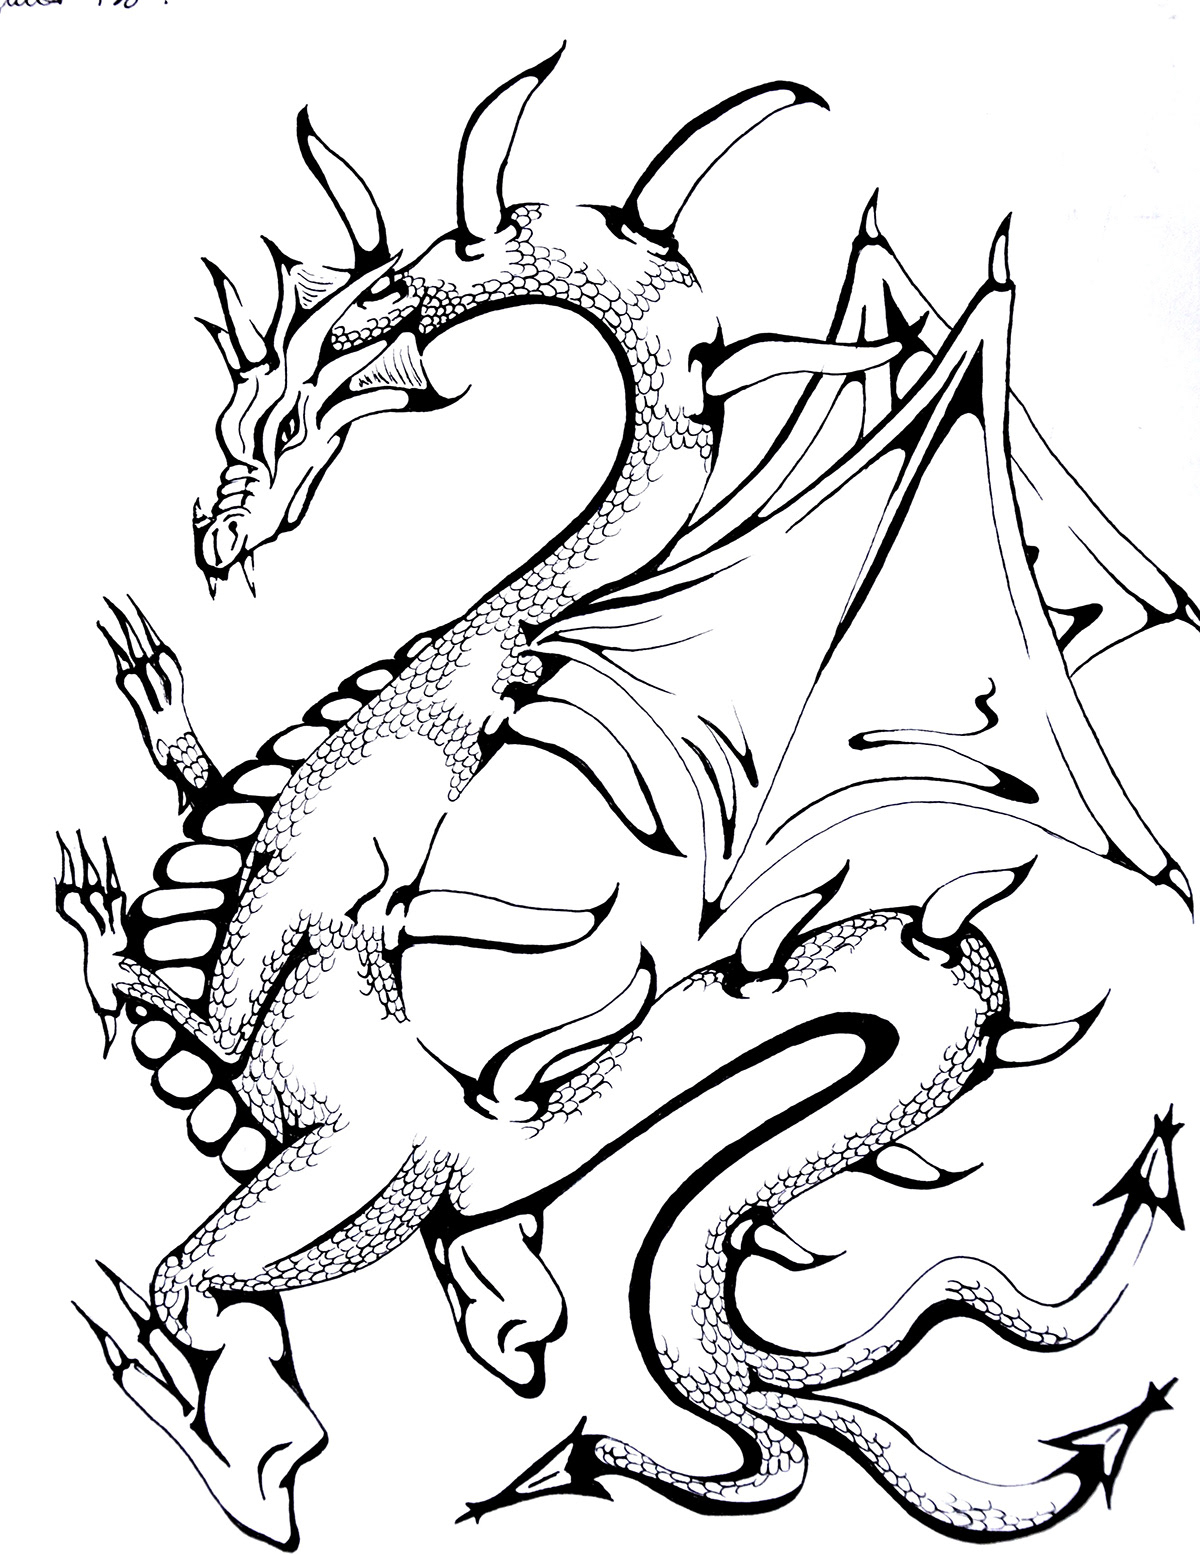 dragon dragons black and white black & white graphic Marker sharpie Fantastic Mechanics christina izzo  izzo FM fantasy